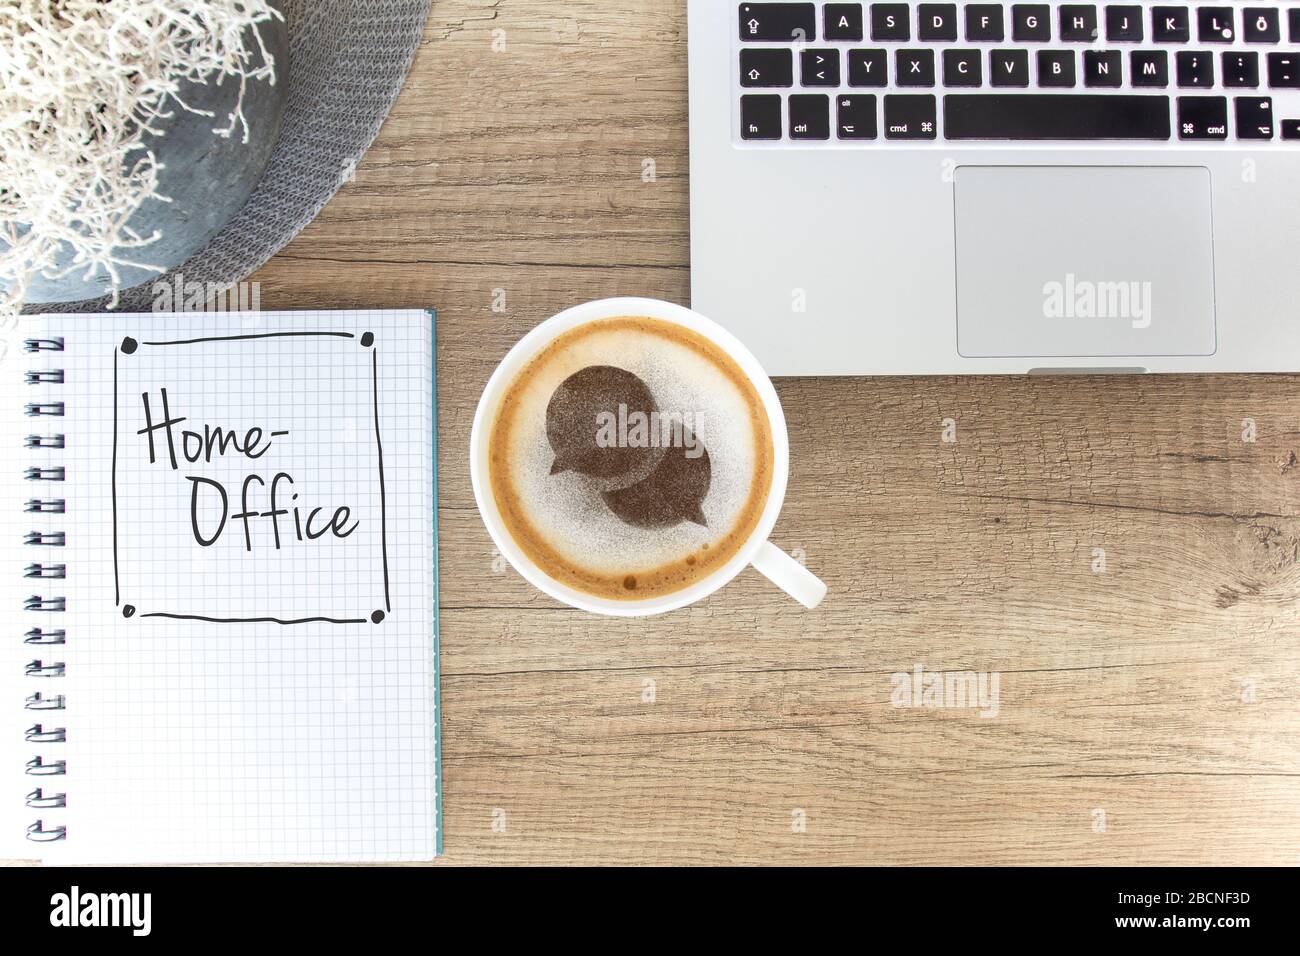 Tasse à café sur une table rustique avec icône web de chat, ordinateur portable et bloc-notes / espace de travail Homeoffice Banque D'Images